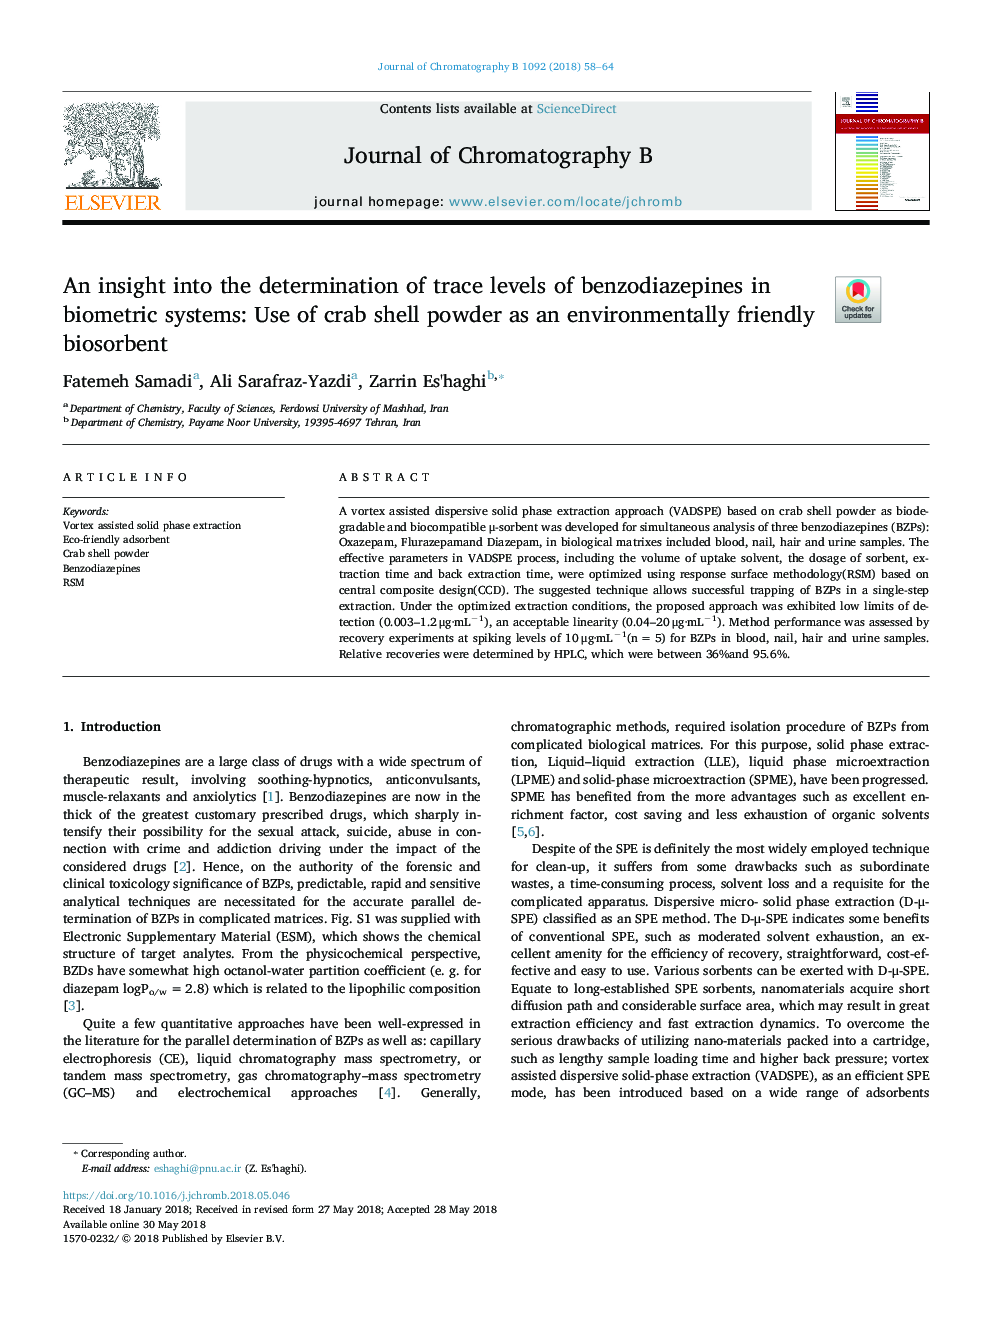 بینش در تعیین سطوح ردیابی بنزودیازپین ها در سیستم های بیومتریک: استفاده از پودر پوسته خرچنگ به عنوان بیوسوربرت سازگار با محیط زیست 